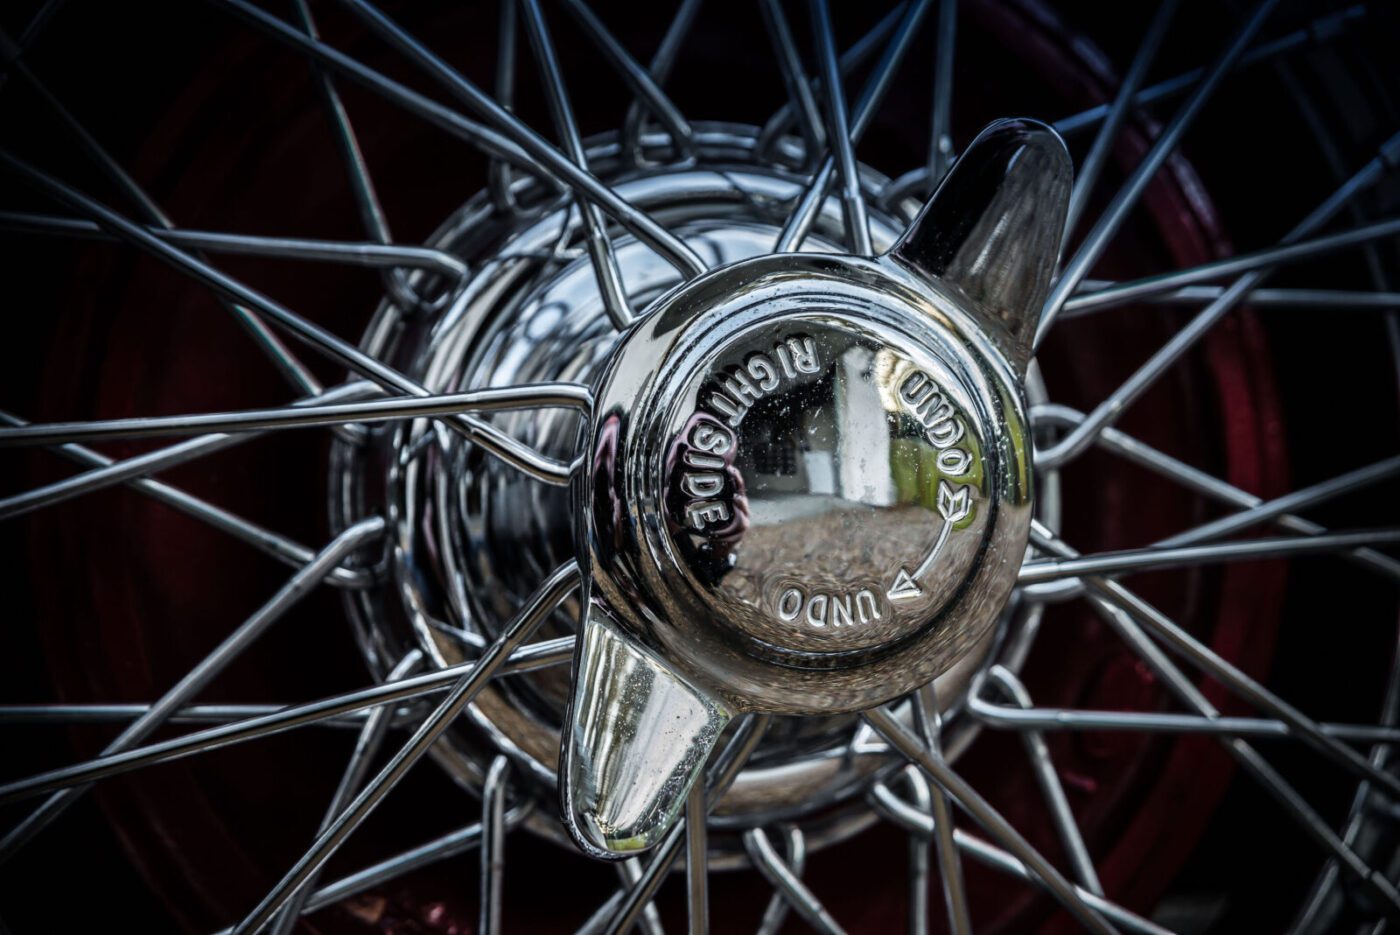 Austin-Healey 100 wire wheel